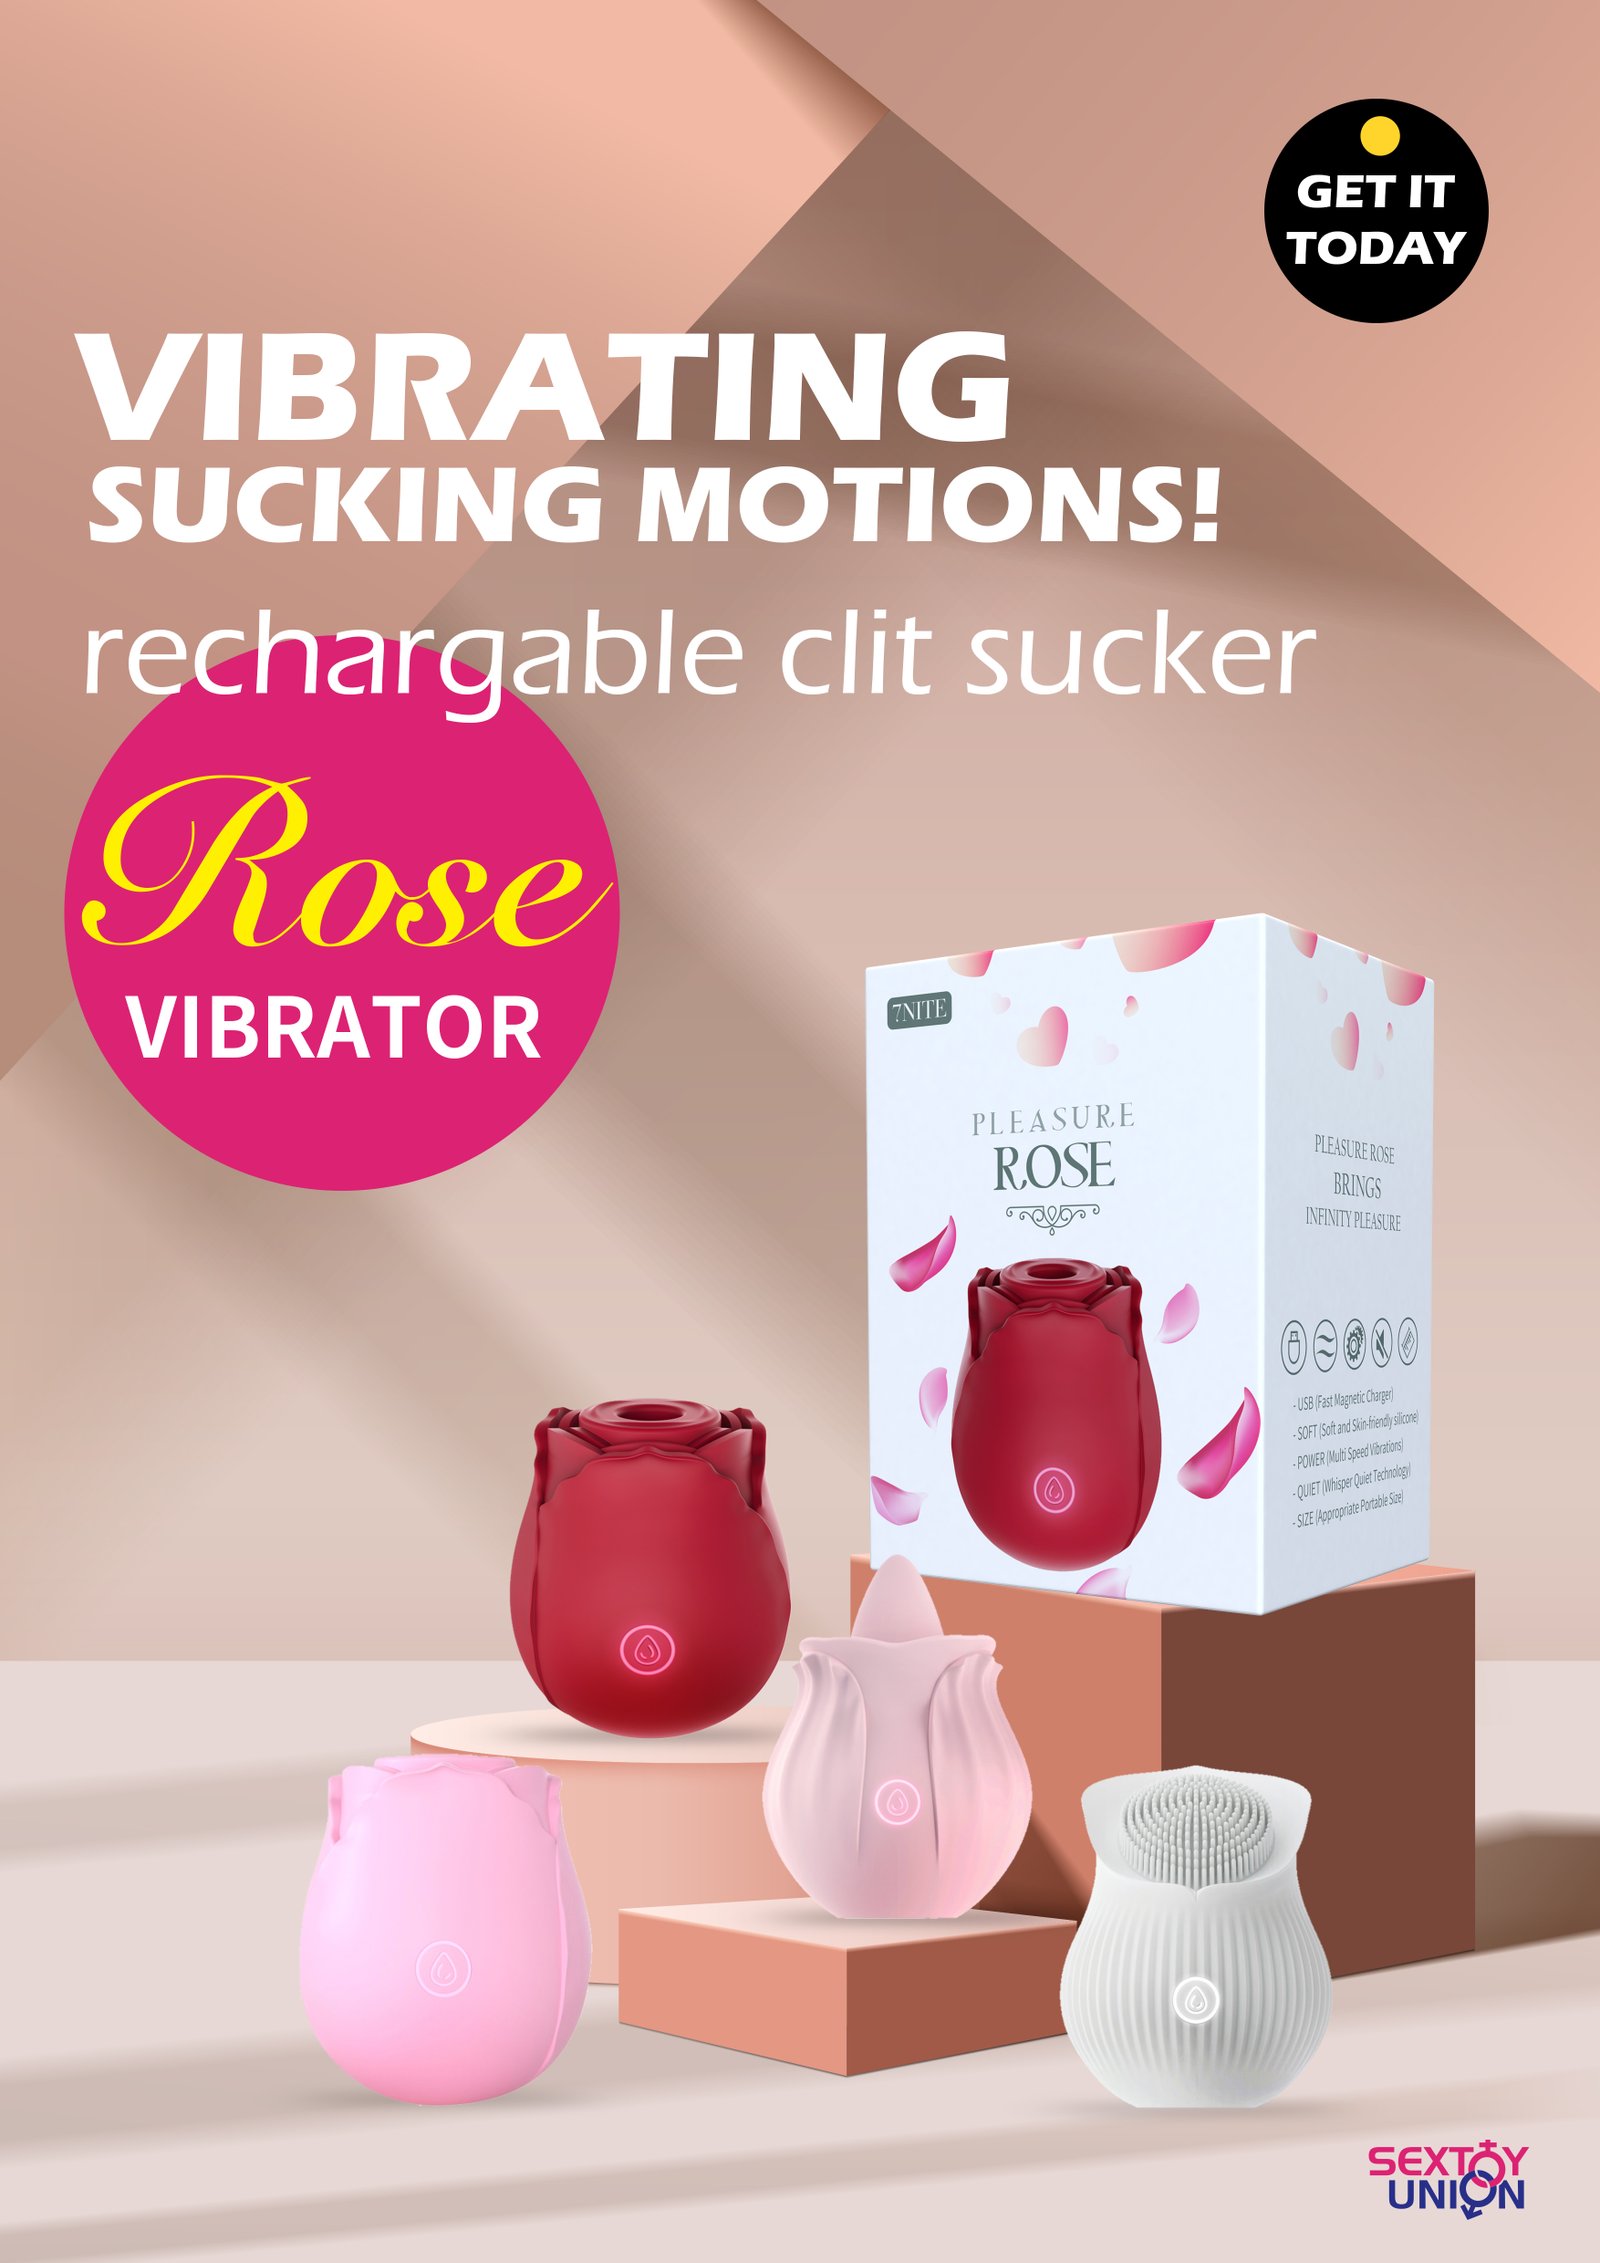 Premium Quality Rose Vibrator Clitoral Suction & Stimulation